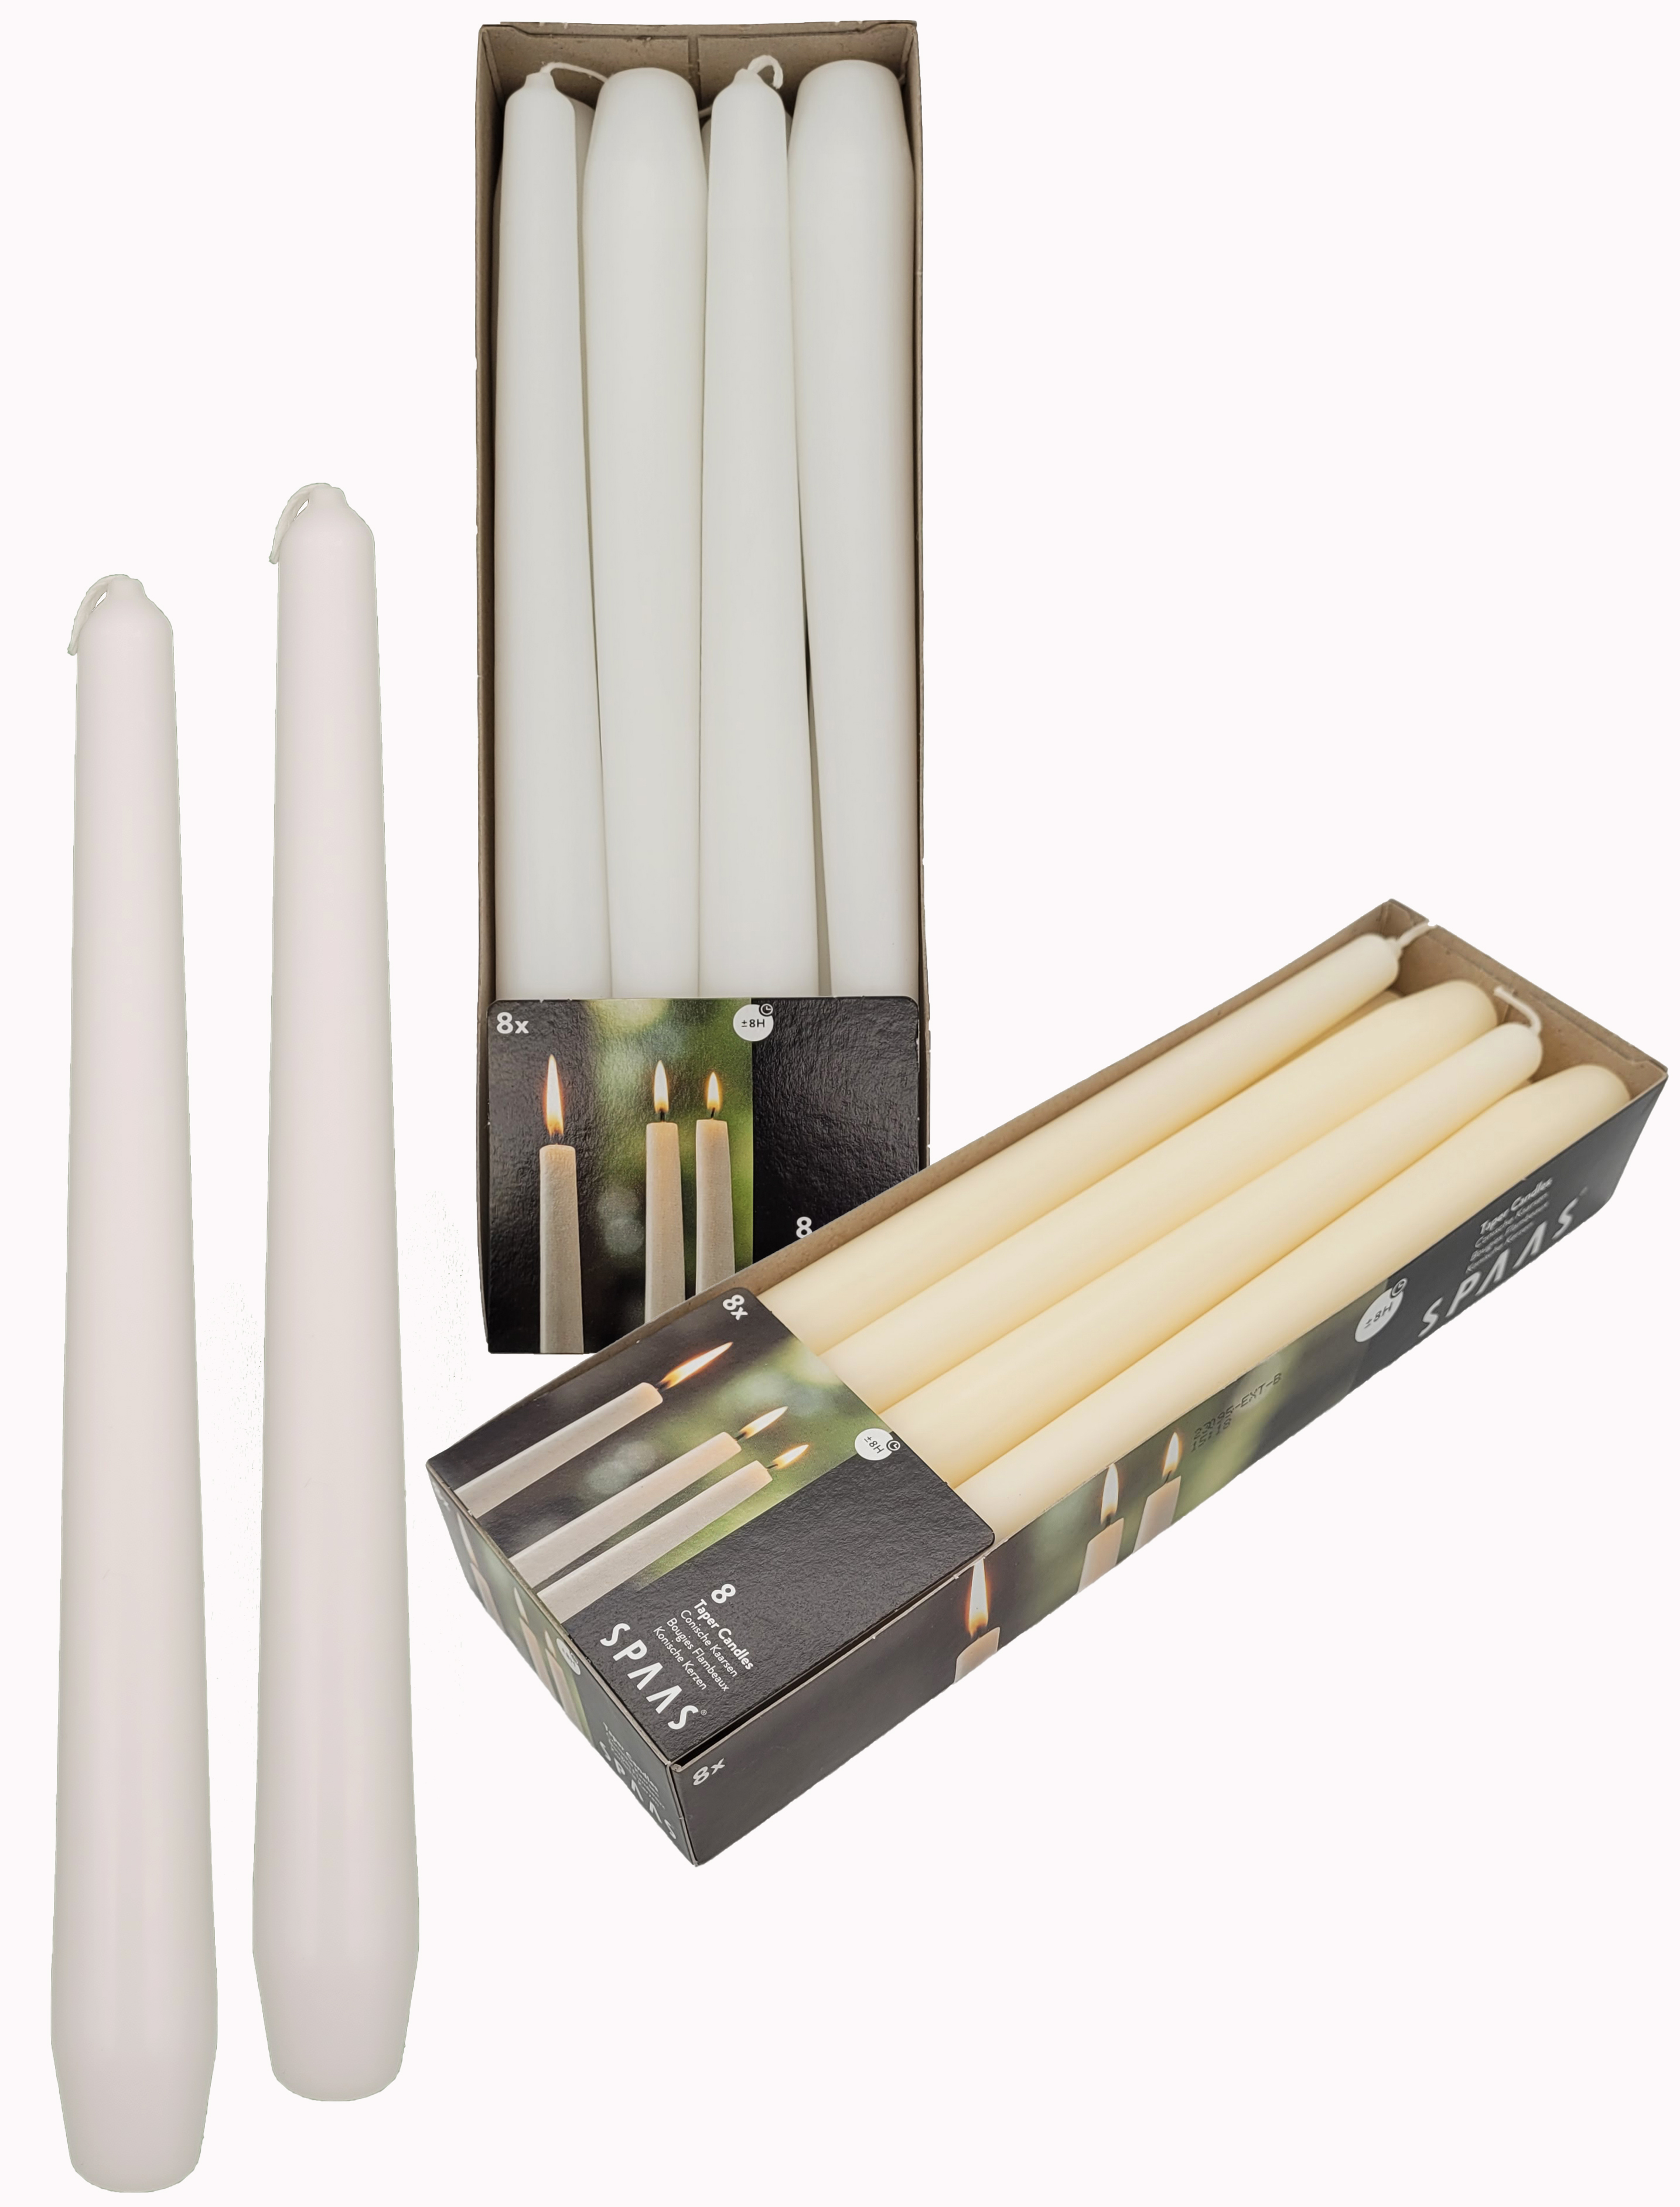 SPAAS Festilux Tischkerzen 23/250 mm – 8 Stück lange Kerzen – Tafelkerzen 8 Brennstunden – Vorteilspack